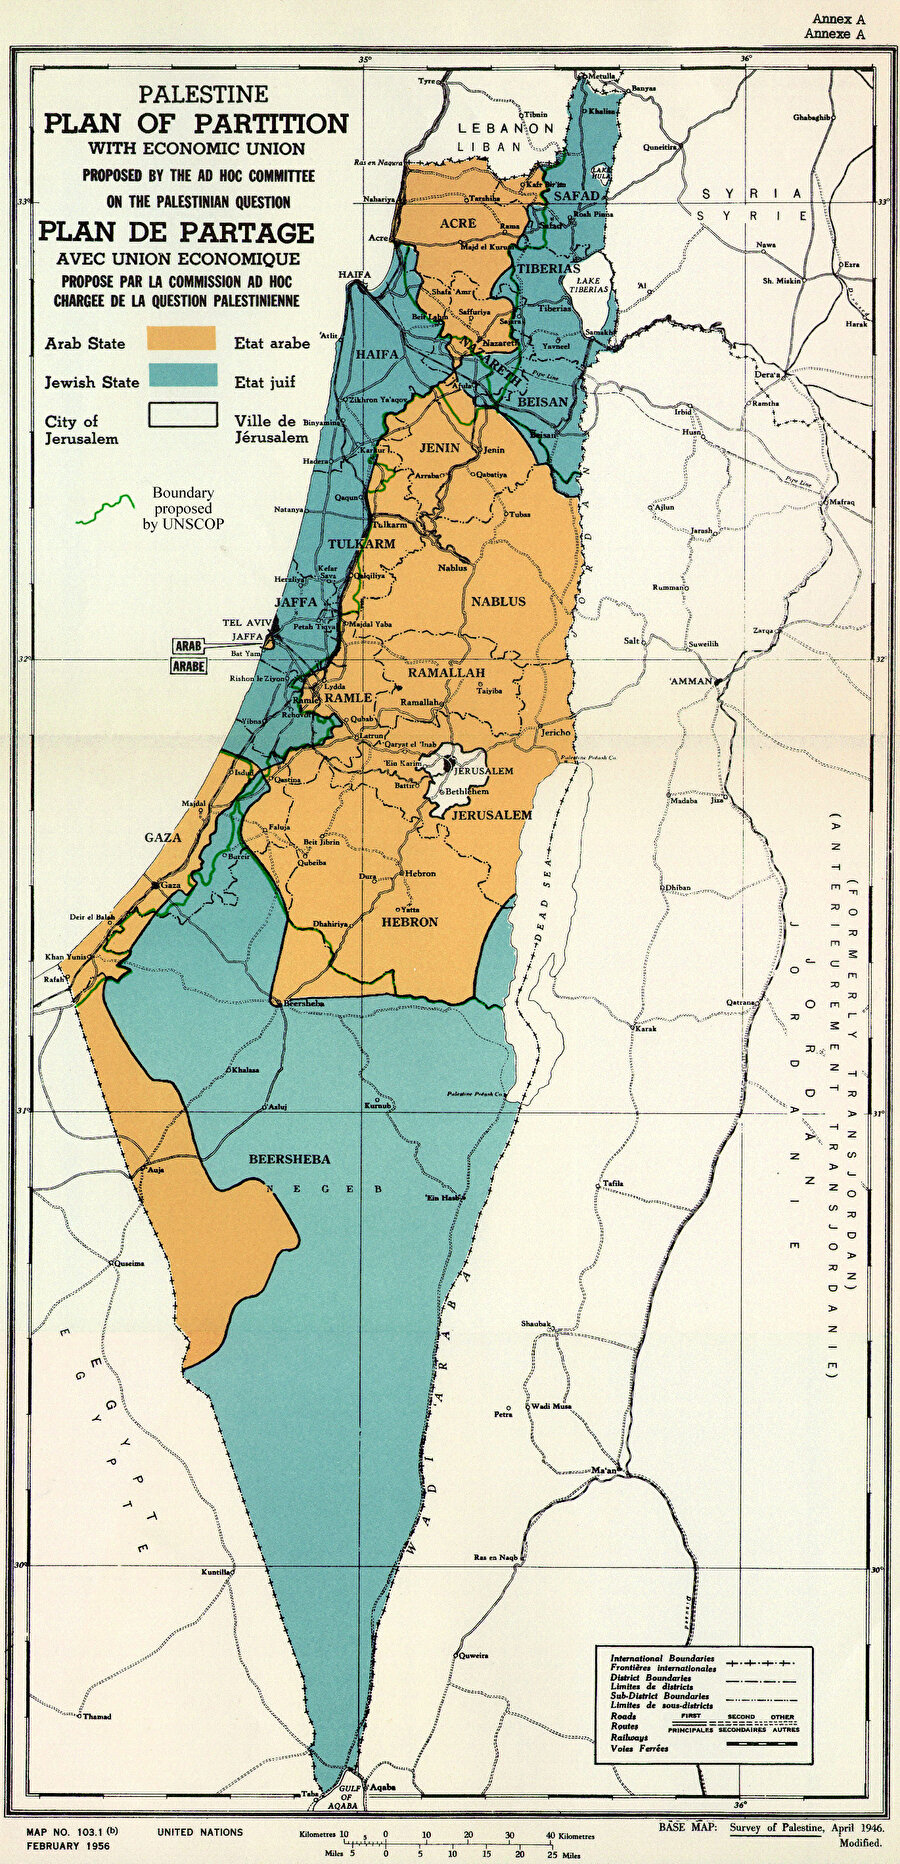 29 Kasım 1947 günü BMGK’da oylamaya sunulan Filistin’in Araplarla Yahudiler arasında paylaştırılması taksim planına göre, tarihî Filistin topraklarının %56,5’i, nüfusun %33’ünü oluşturan Yahudilere, %43,5’i ise nüfusun %67’sini oluşturan Araplara verilmişti.